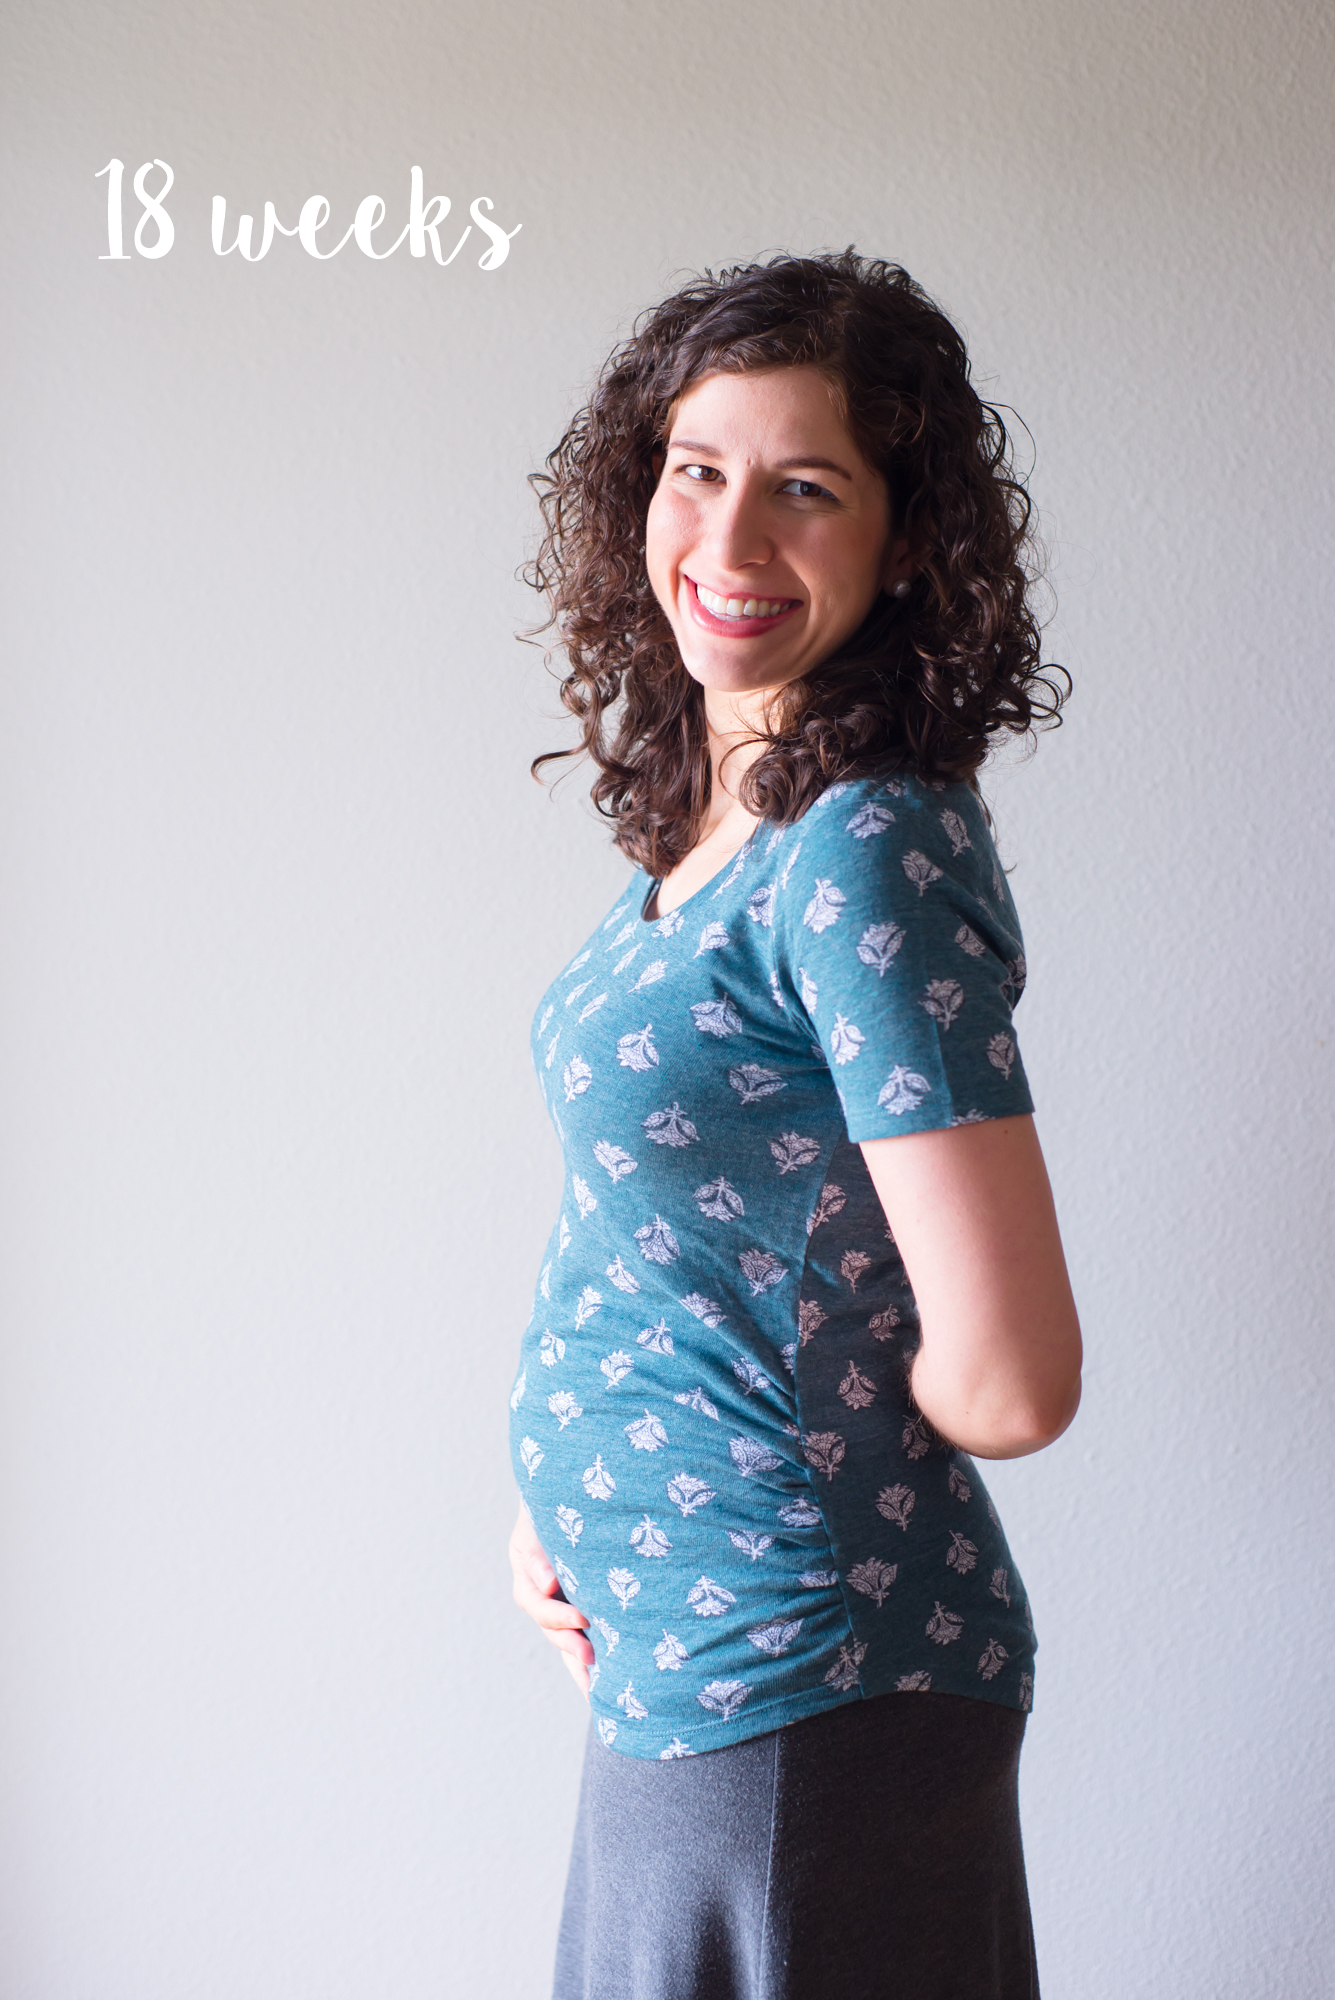 18 Weeks, Pregnancy Update | Jack